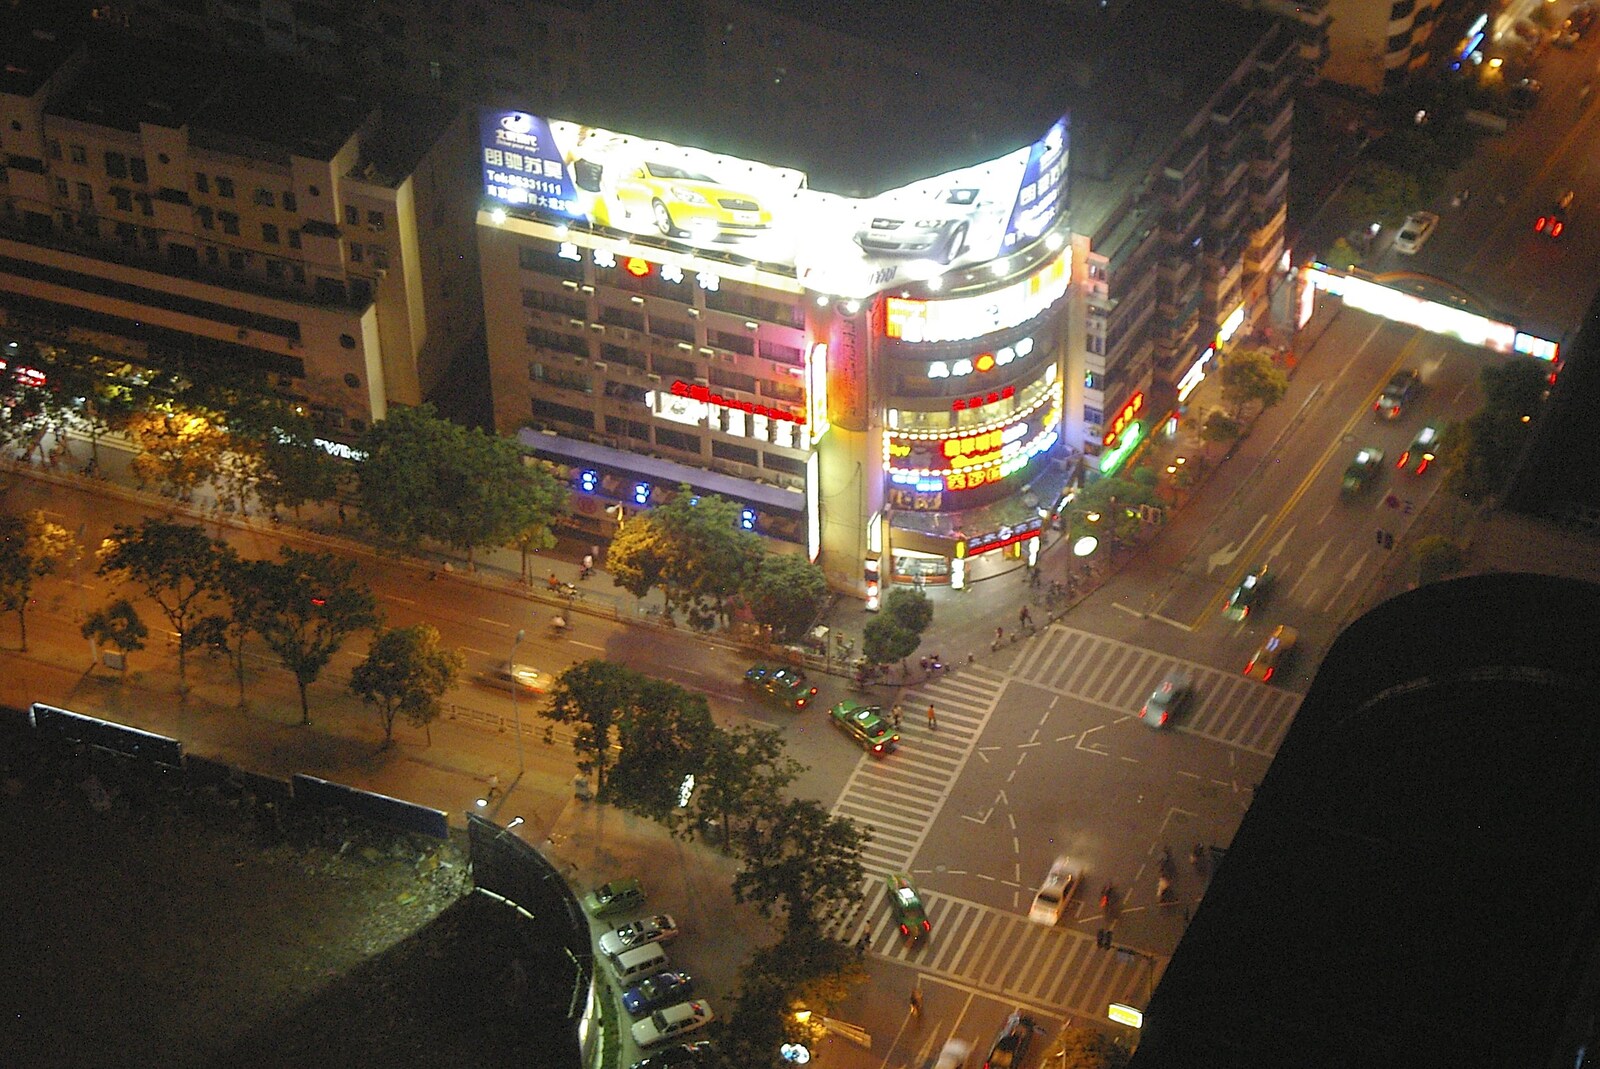 A Nanjing intersection from Nanjing by Night, Nanjing, Jiangsu Province, China - 4th October 2006